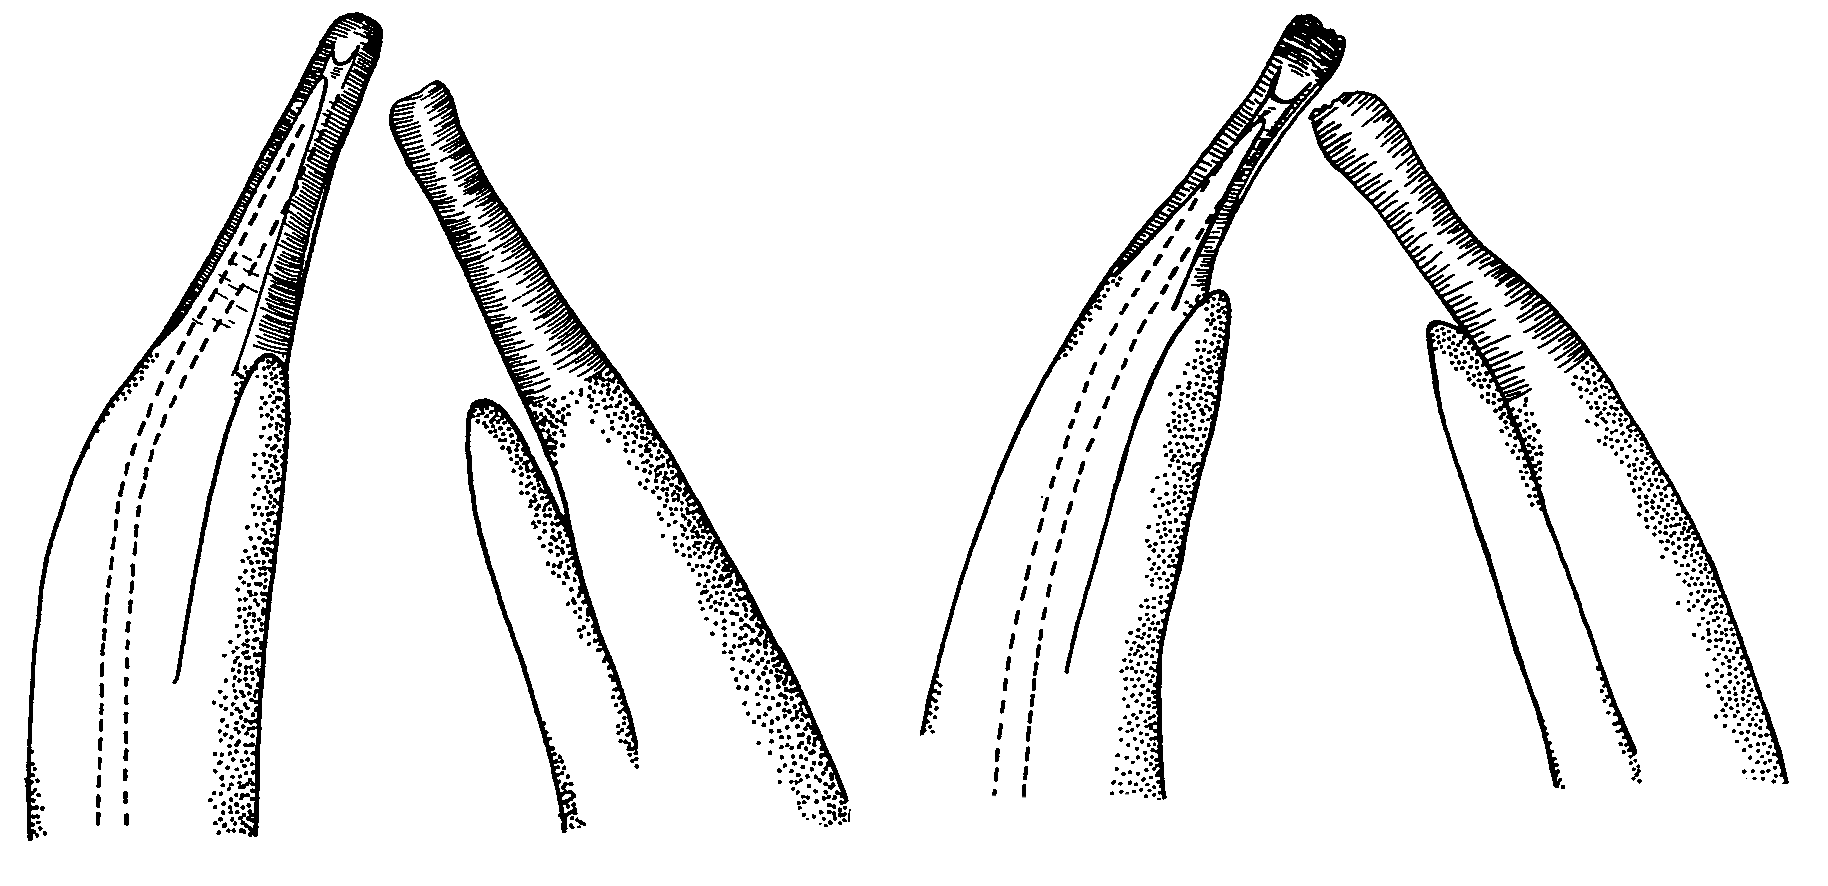 Uca triangularis triangularis: Crane (1975) image